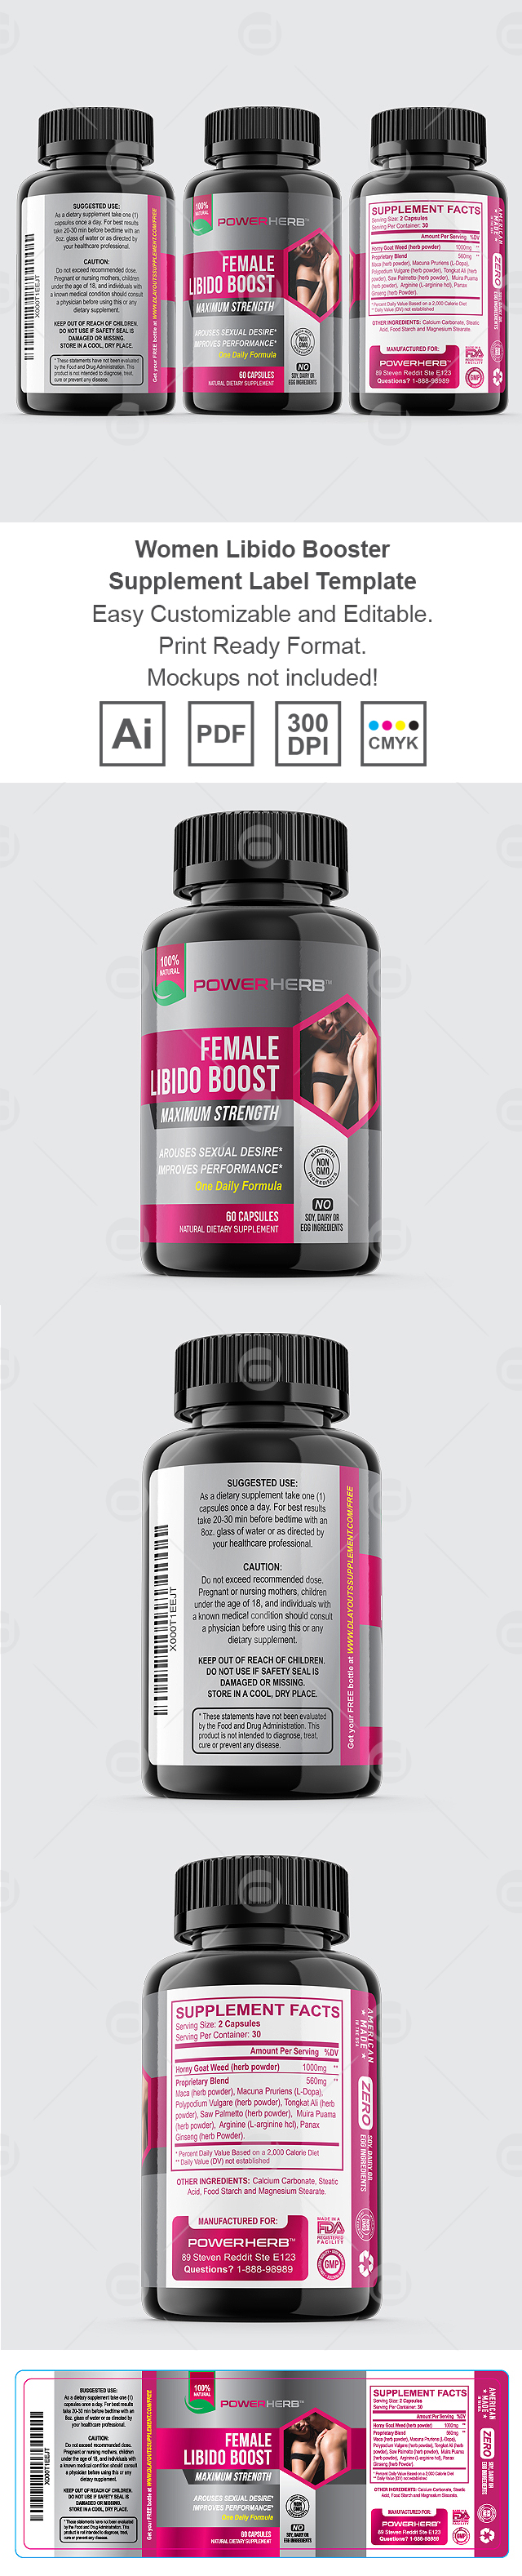 Women Libido Booster Supplement Label Template